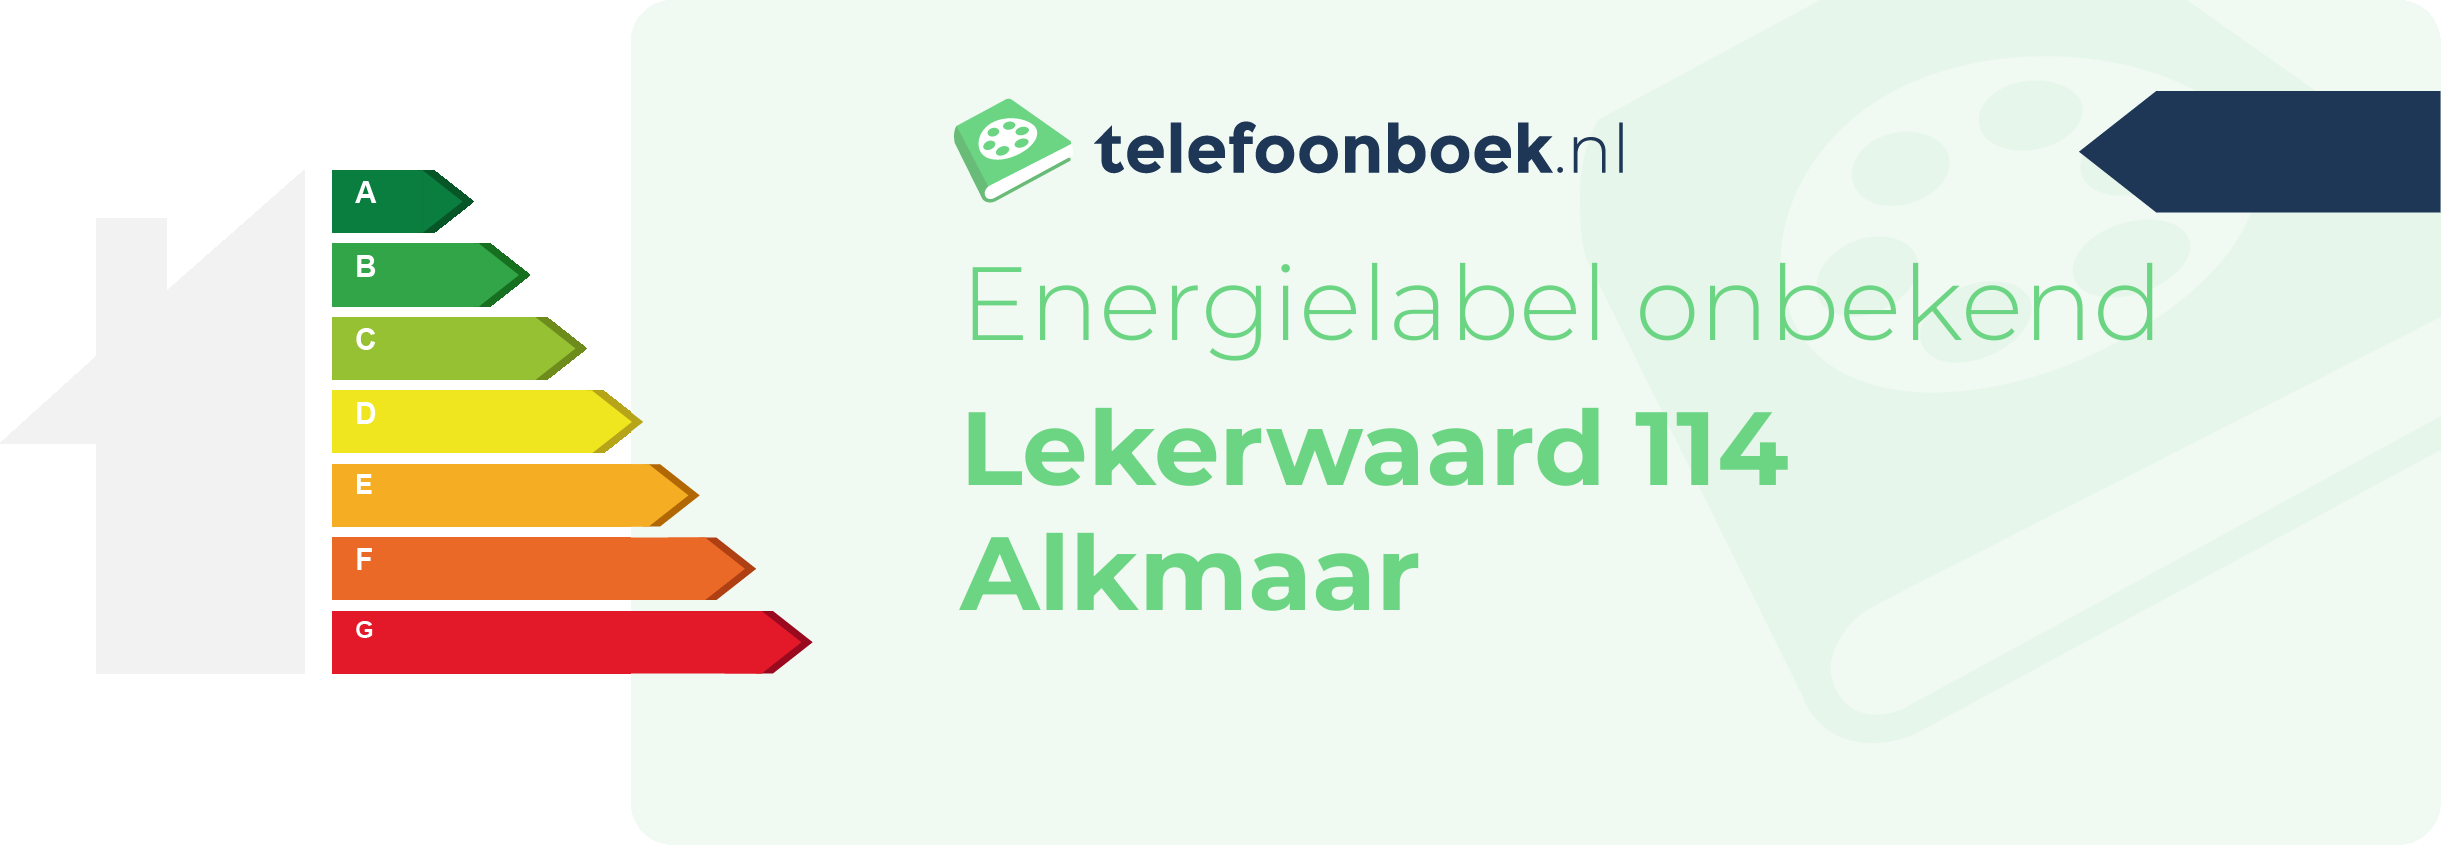 Energielabel Lekerwaard 114 Alkmaar